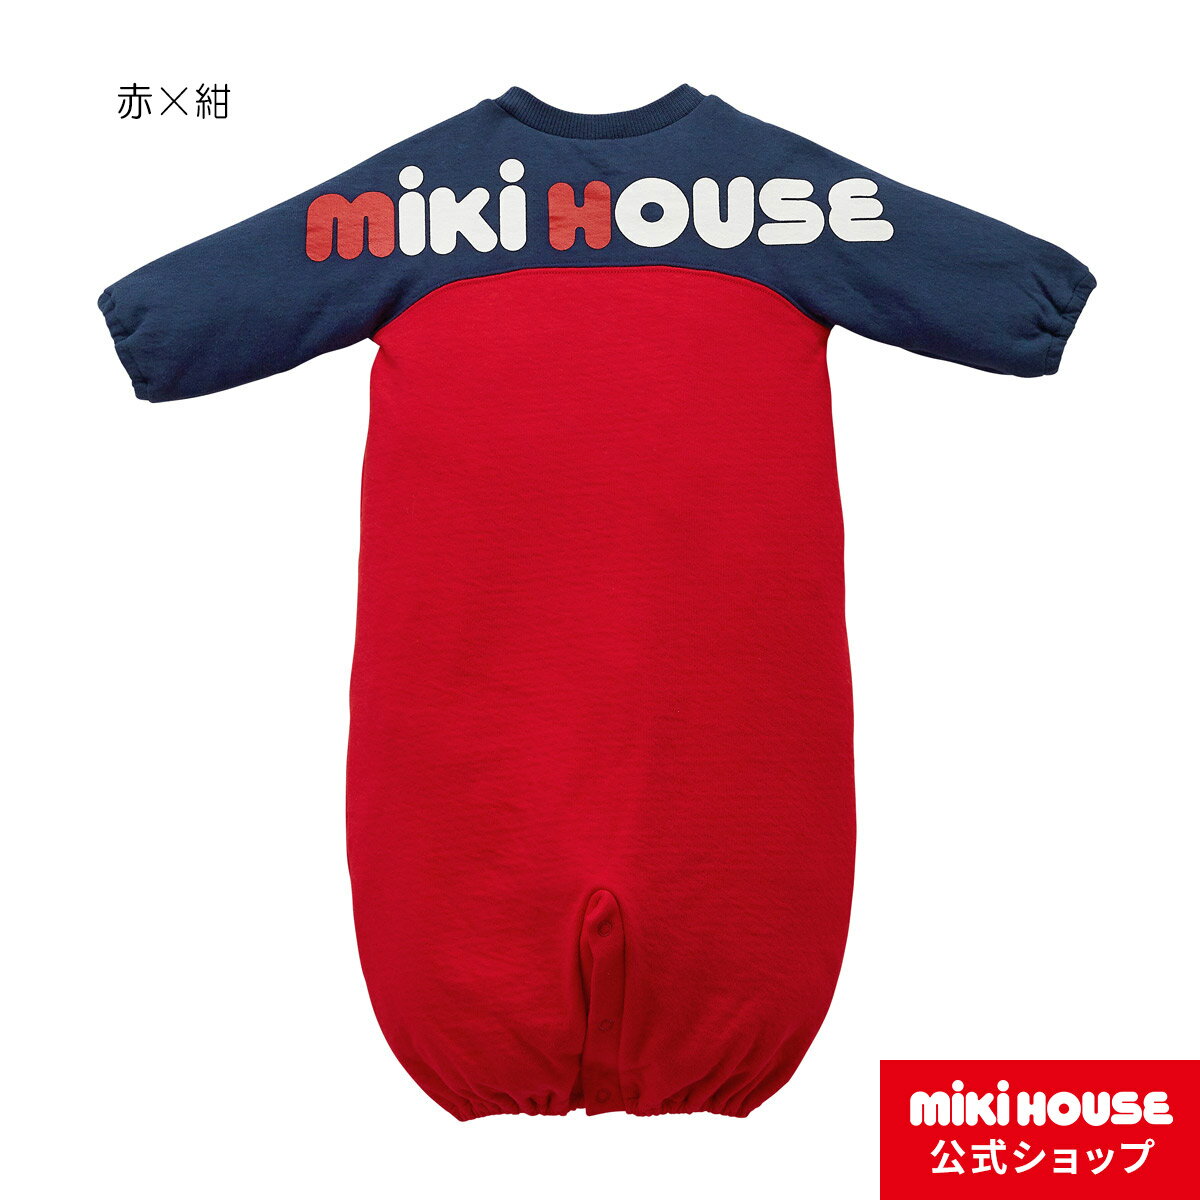 【ミキハウス公式ショップ】ミキハウス mikih...の商品画像